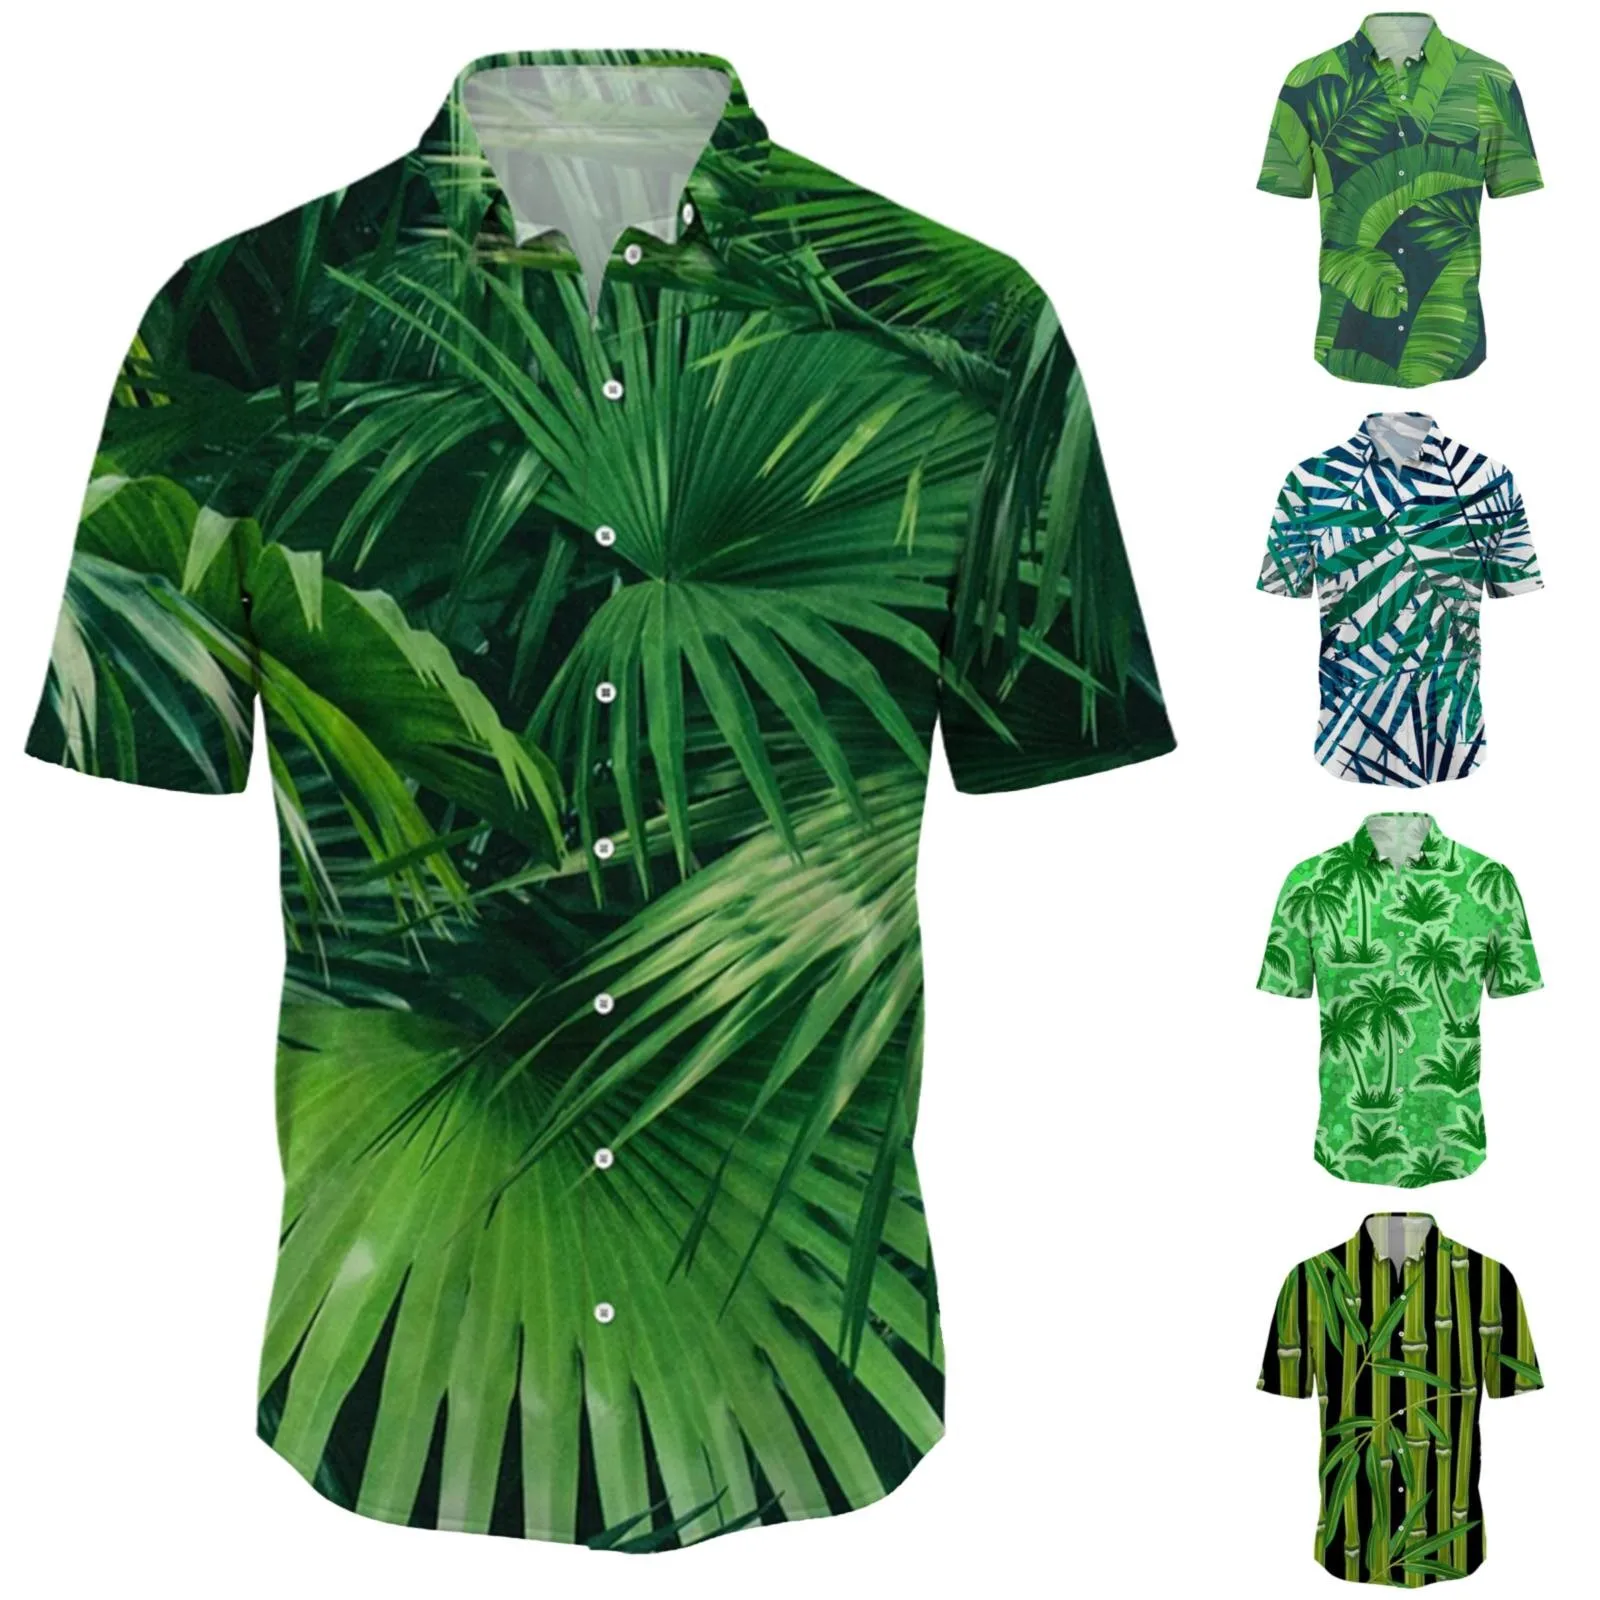 

Боди, короткий летний модный тренд отлично сочетается с зелеными рубашками с коротким рукавом и принтом, мужские тонкие рубашки